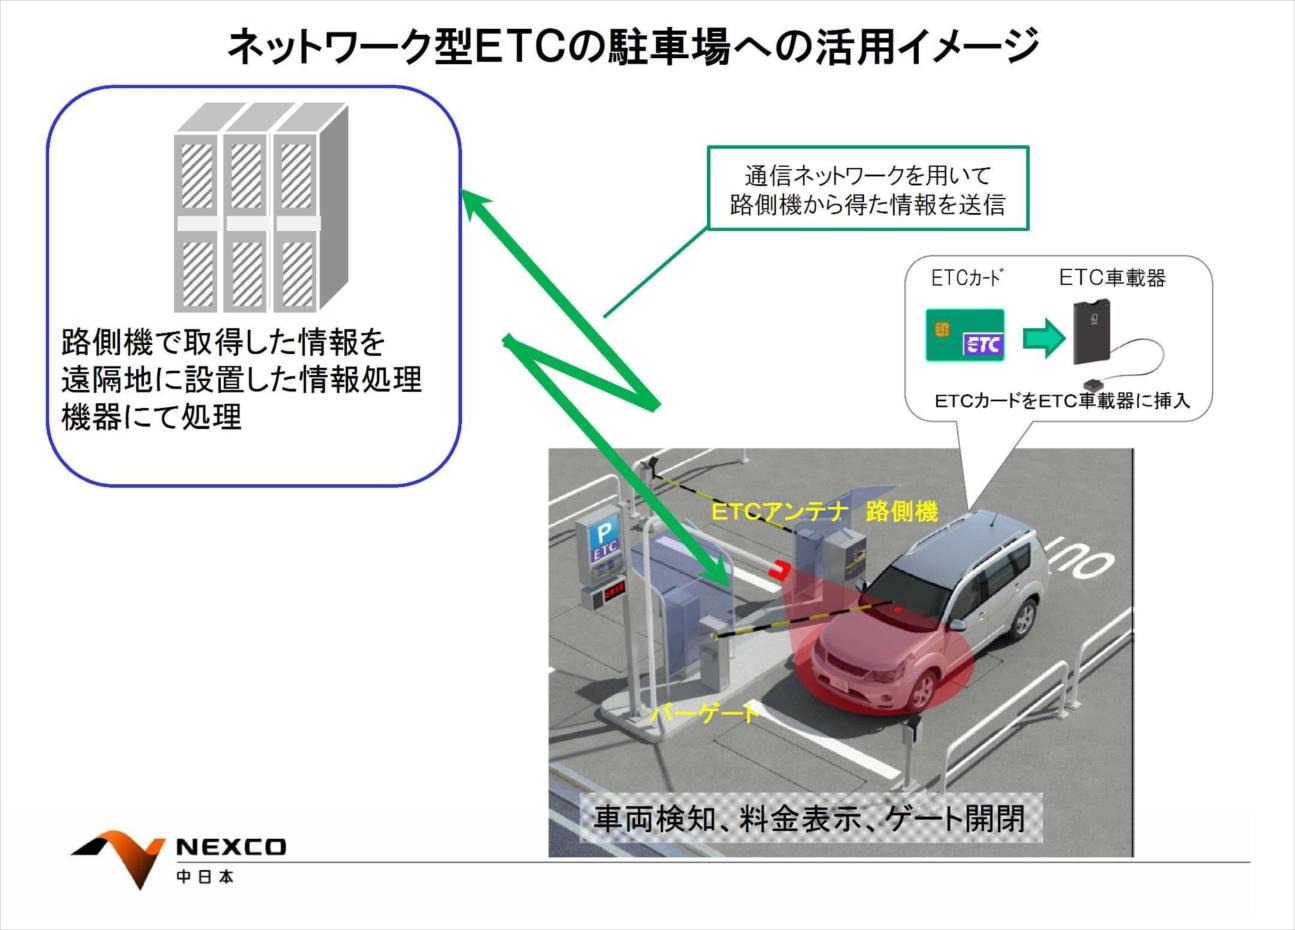 駐車料金をetcで決済 静岡市内でのモニター募集は今までと何が違うのか レスポンス Response Jp